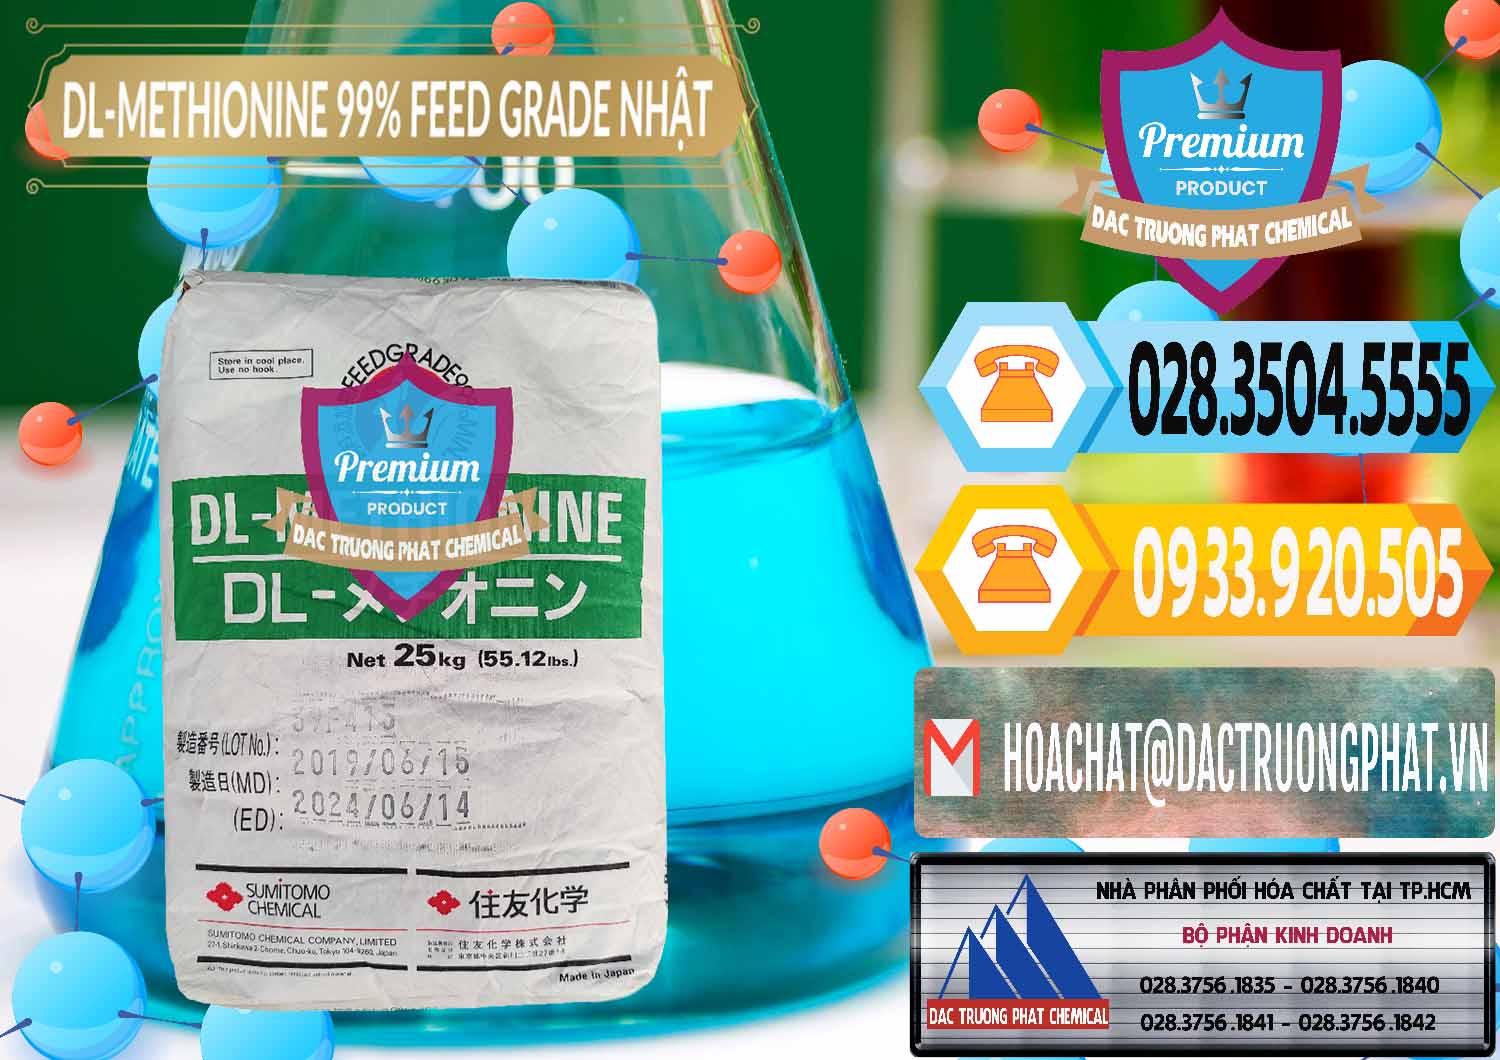 Chuyên cung cấp _ bán DL-Methionine - C5H11NO2S Feed Grade Sumitomo Nhật Bản Japan - 0313 - Cty chuyên bán và cung cấp hóa chất tại TP.HCM - hoachattayrua.net